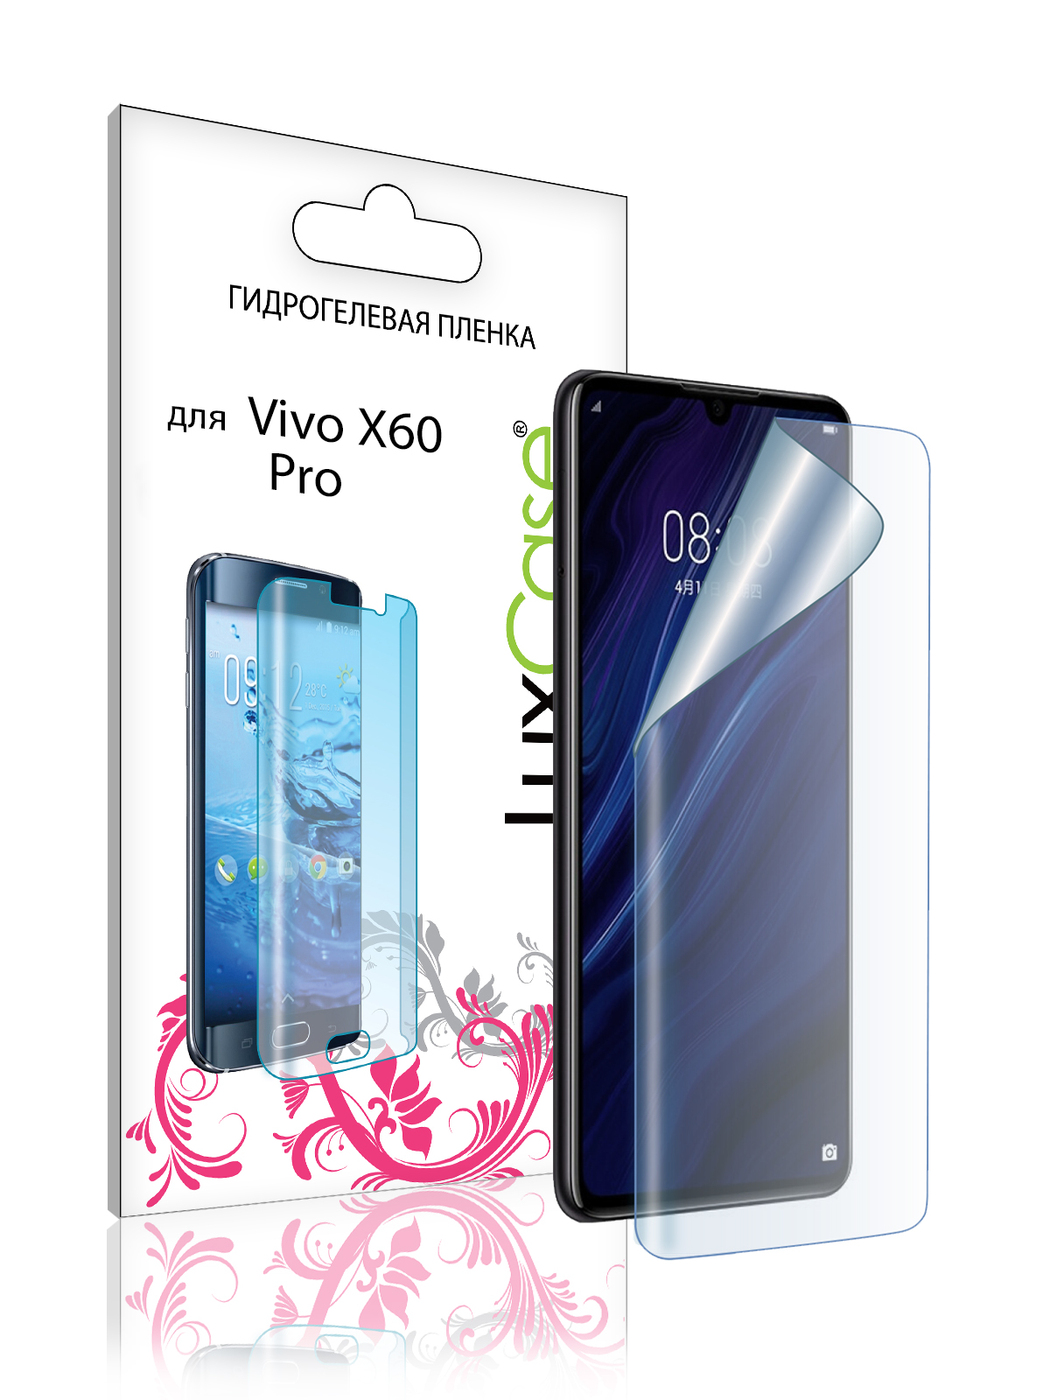 Пленка гидрогелевая LuxCase для Vivo X60 Pro Front 0.14mm Transparent 86001 силиконовый чехол на vivo x60 pro одежда для такс для виво икс 60 про